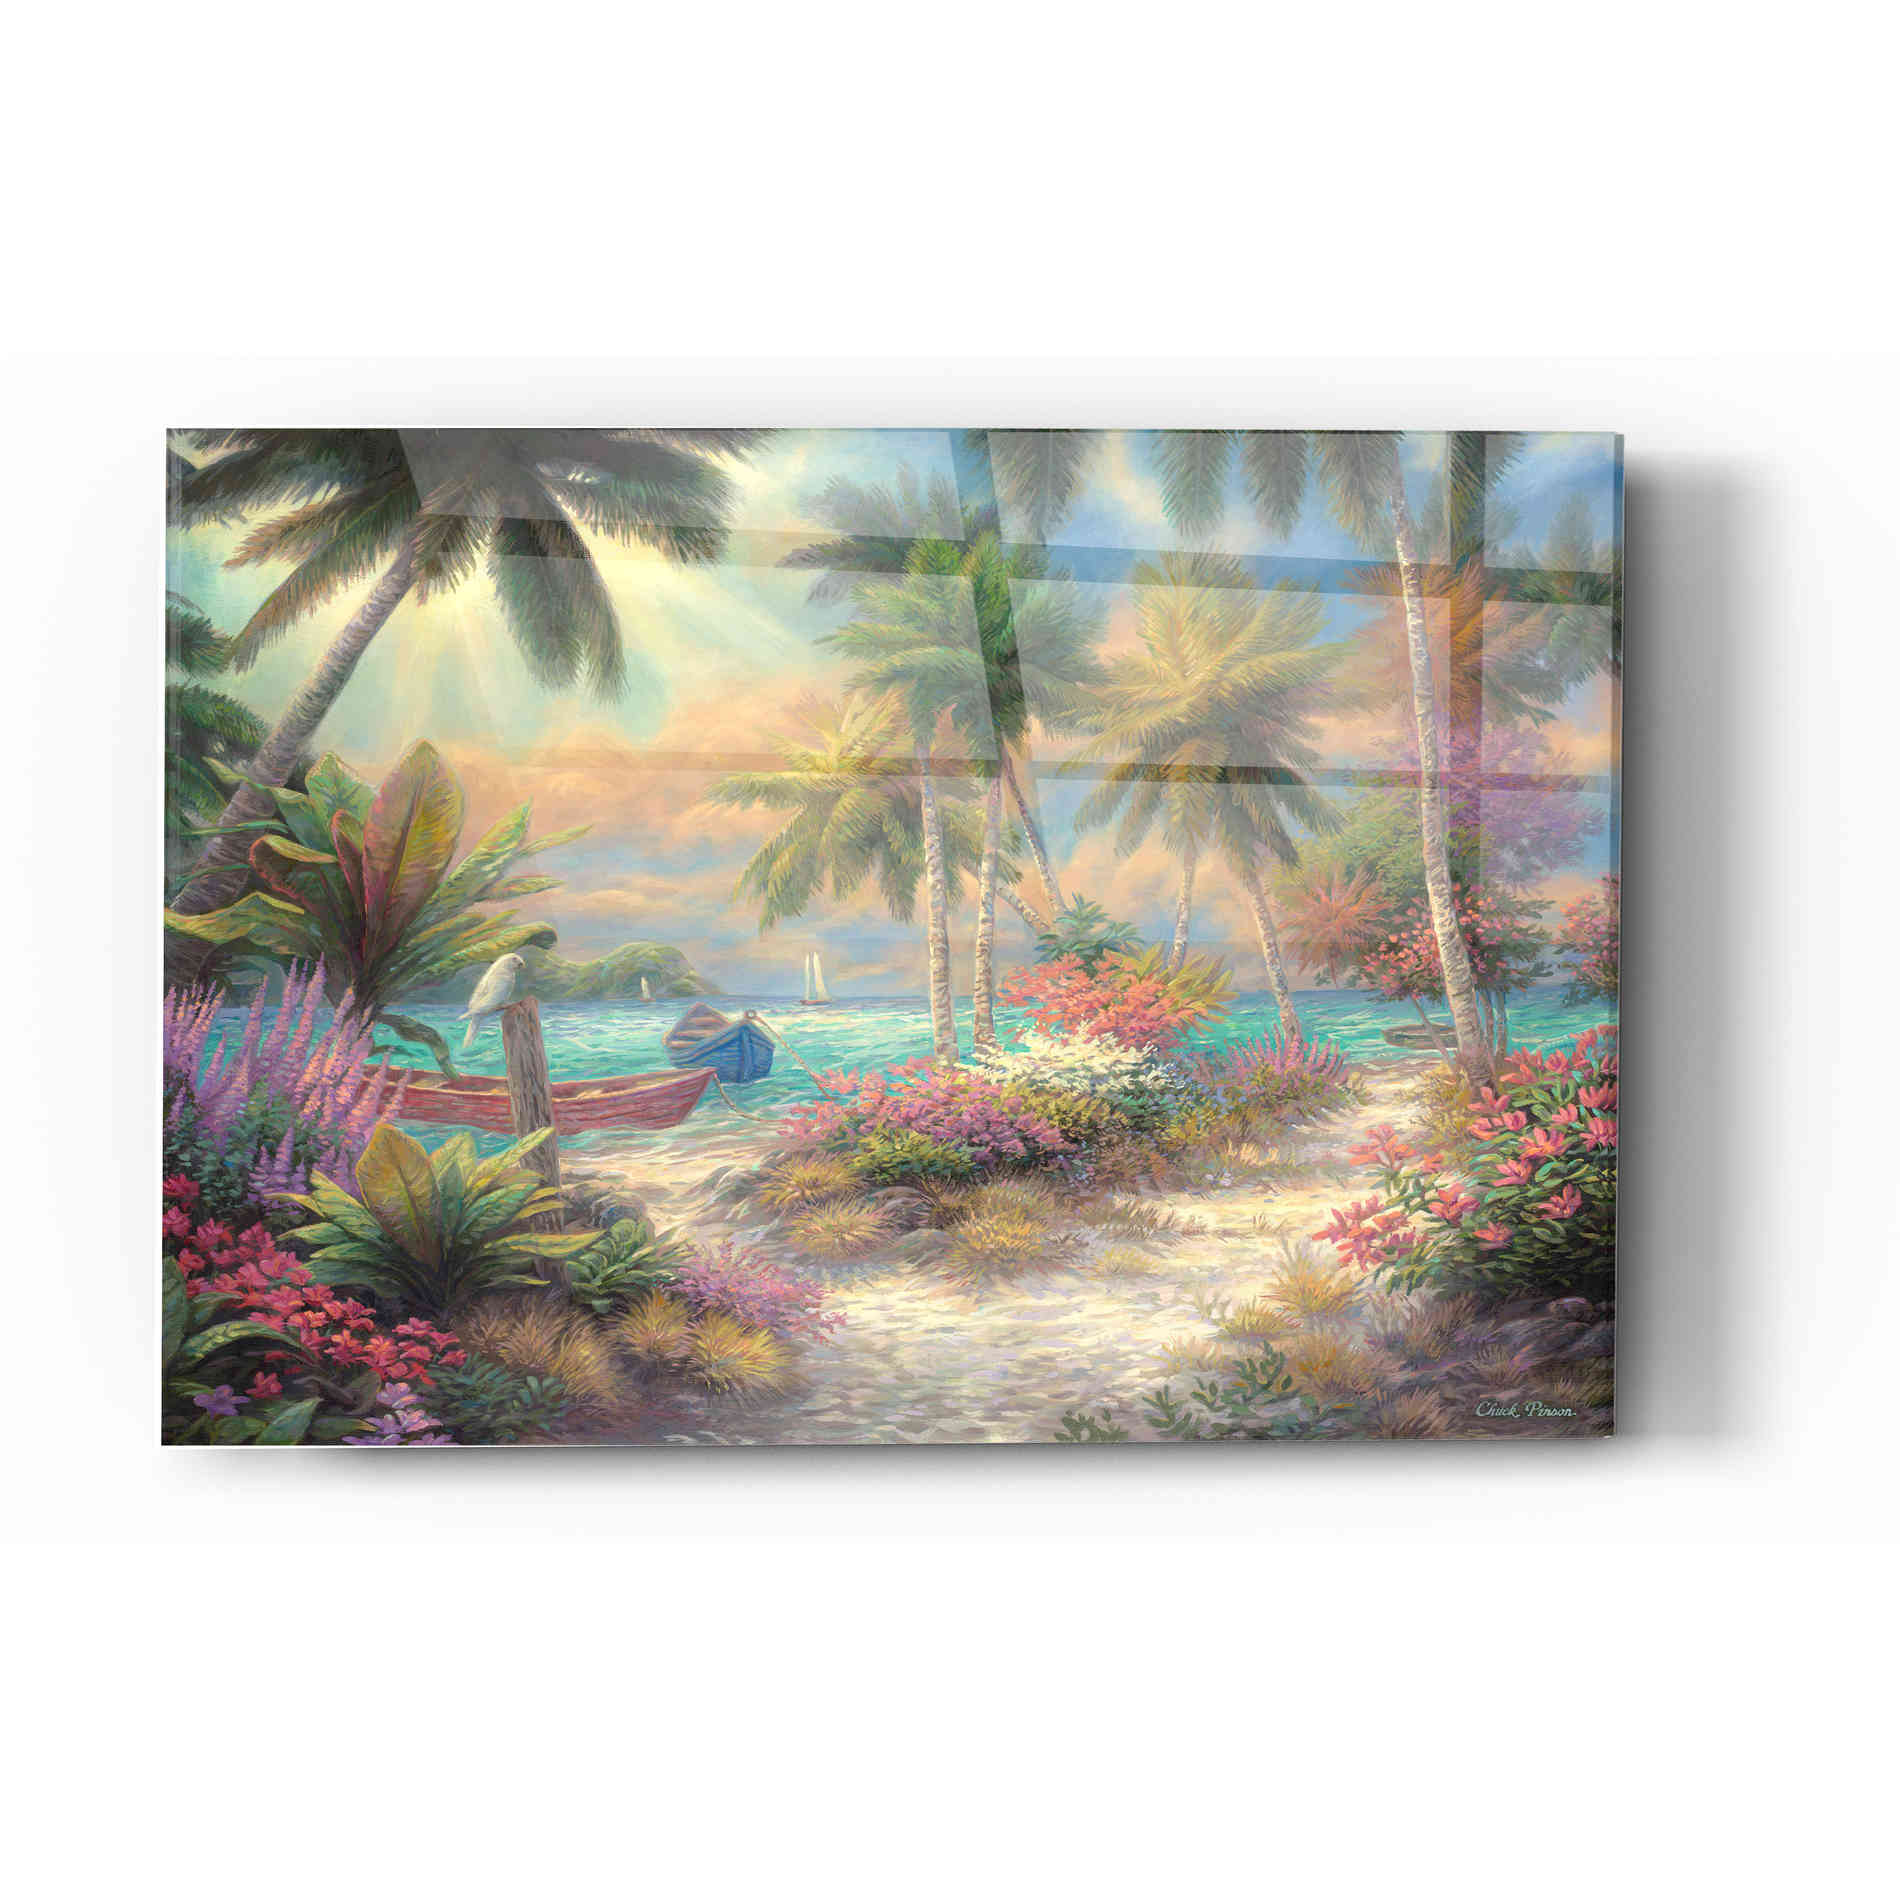 Epic Art 'Isle of Palms' by Chuck Pinson, Acrylic Glass Wall Art,12x16